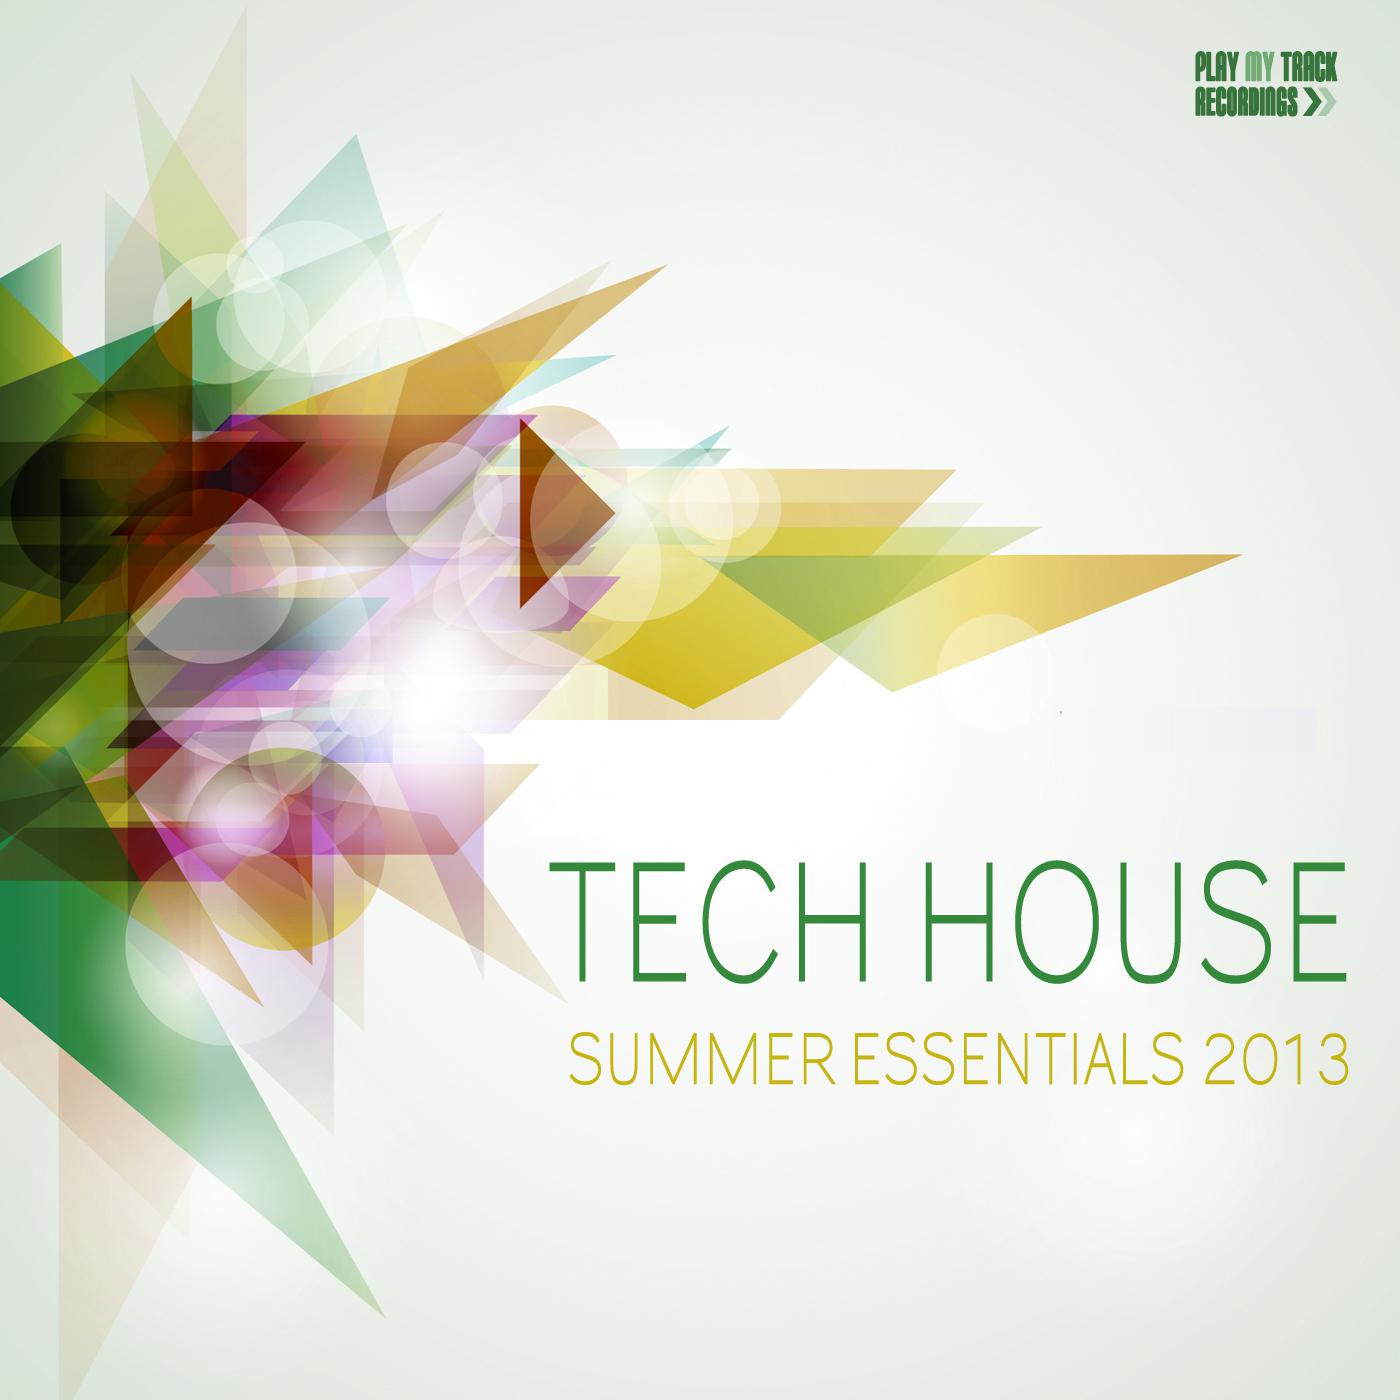 Tech House Summer Essentials 2013